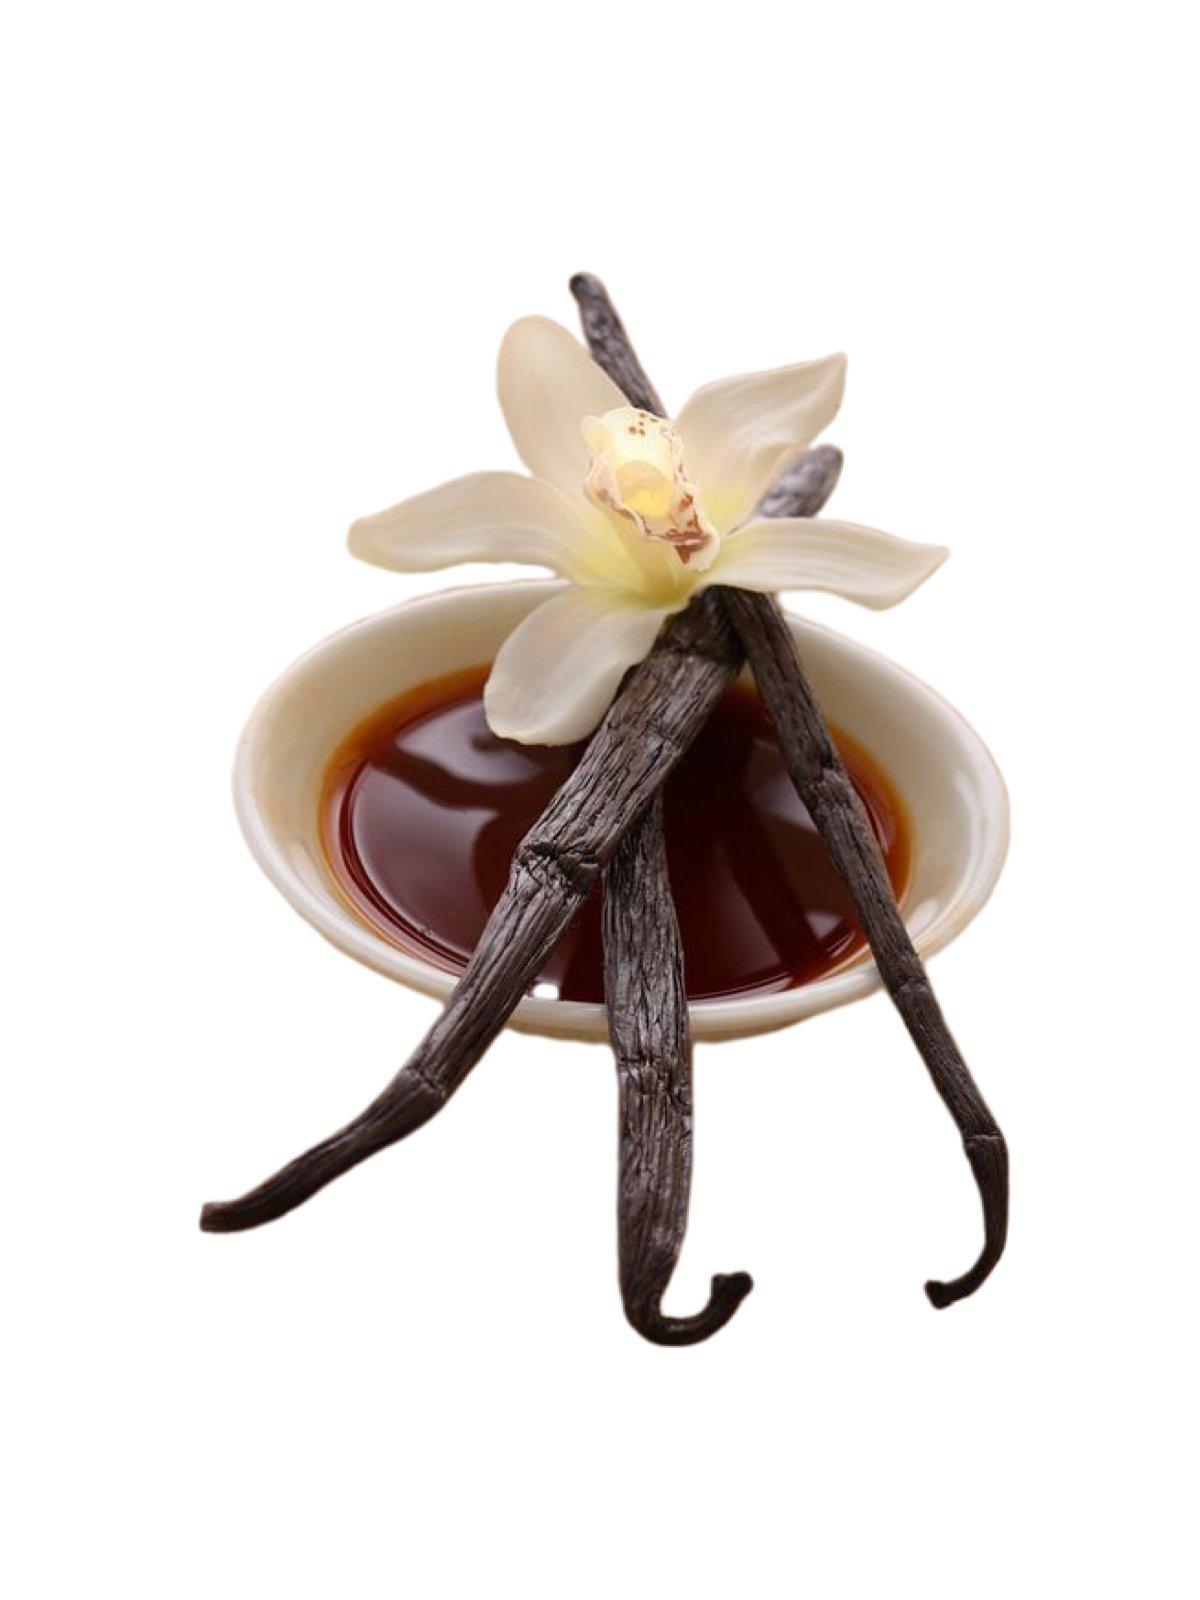 Indonesian Vanilla Planifolia Gourmet Grade-A Beans<br>For Extract And Baking<BR>1/4 lb, 1/2 lb, 1 lb, 2 lb